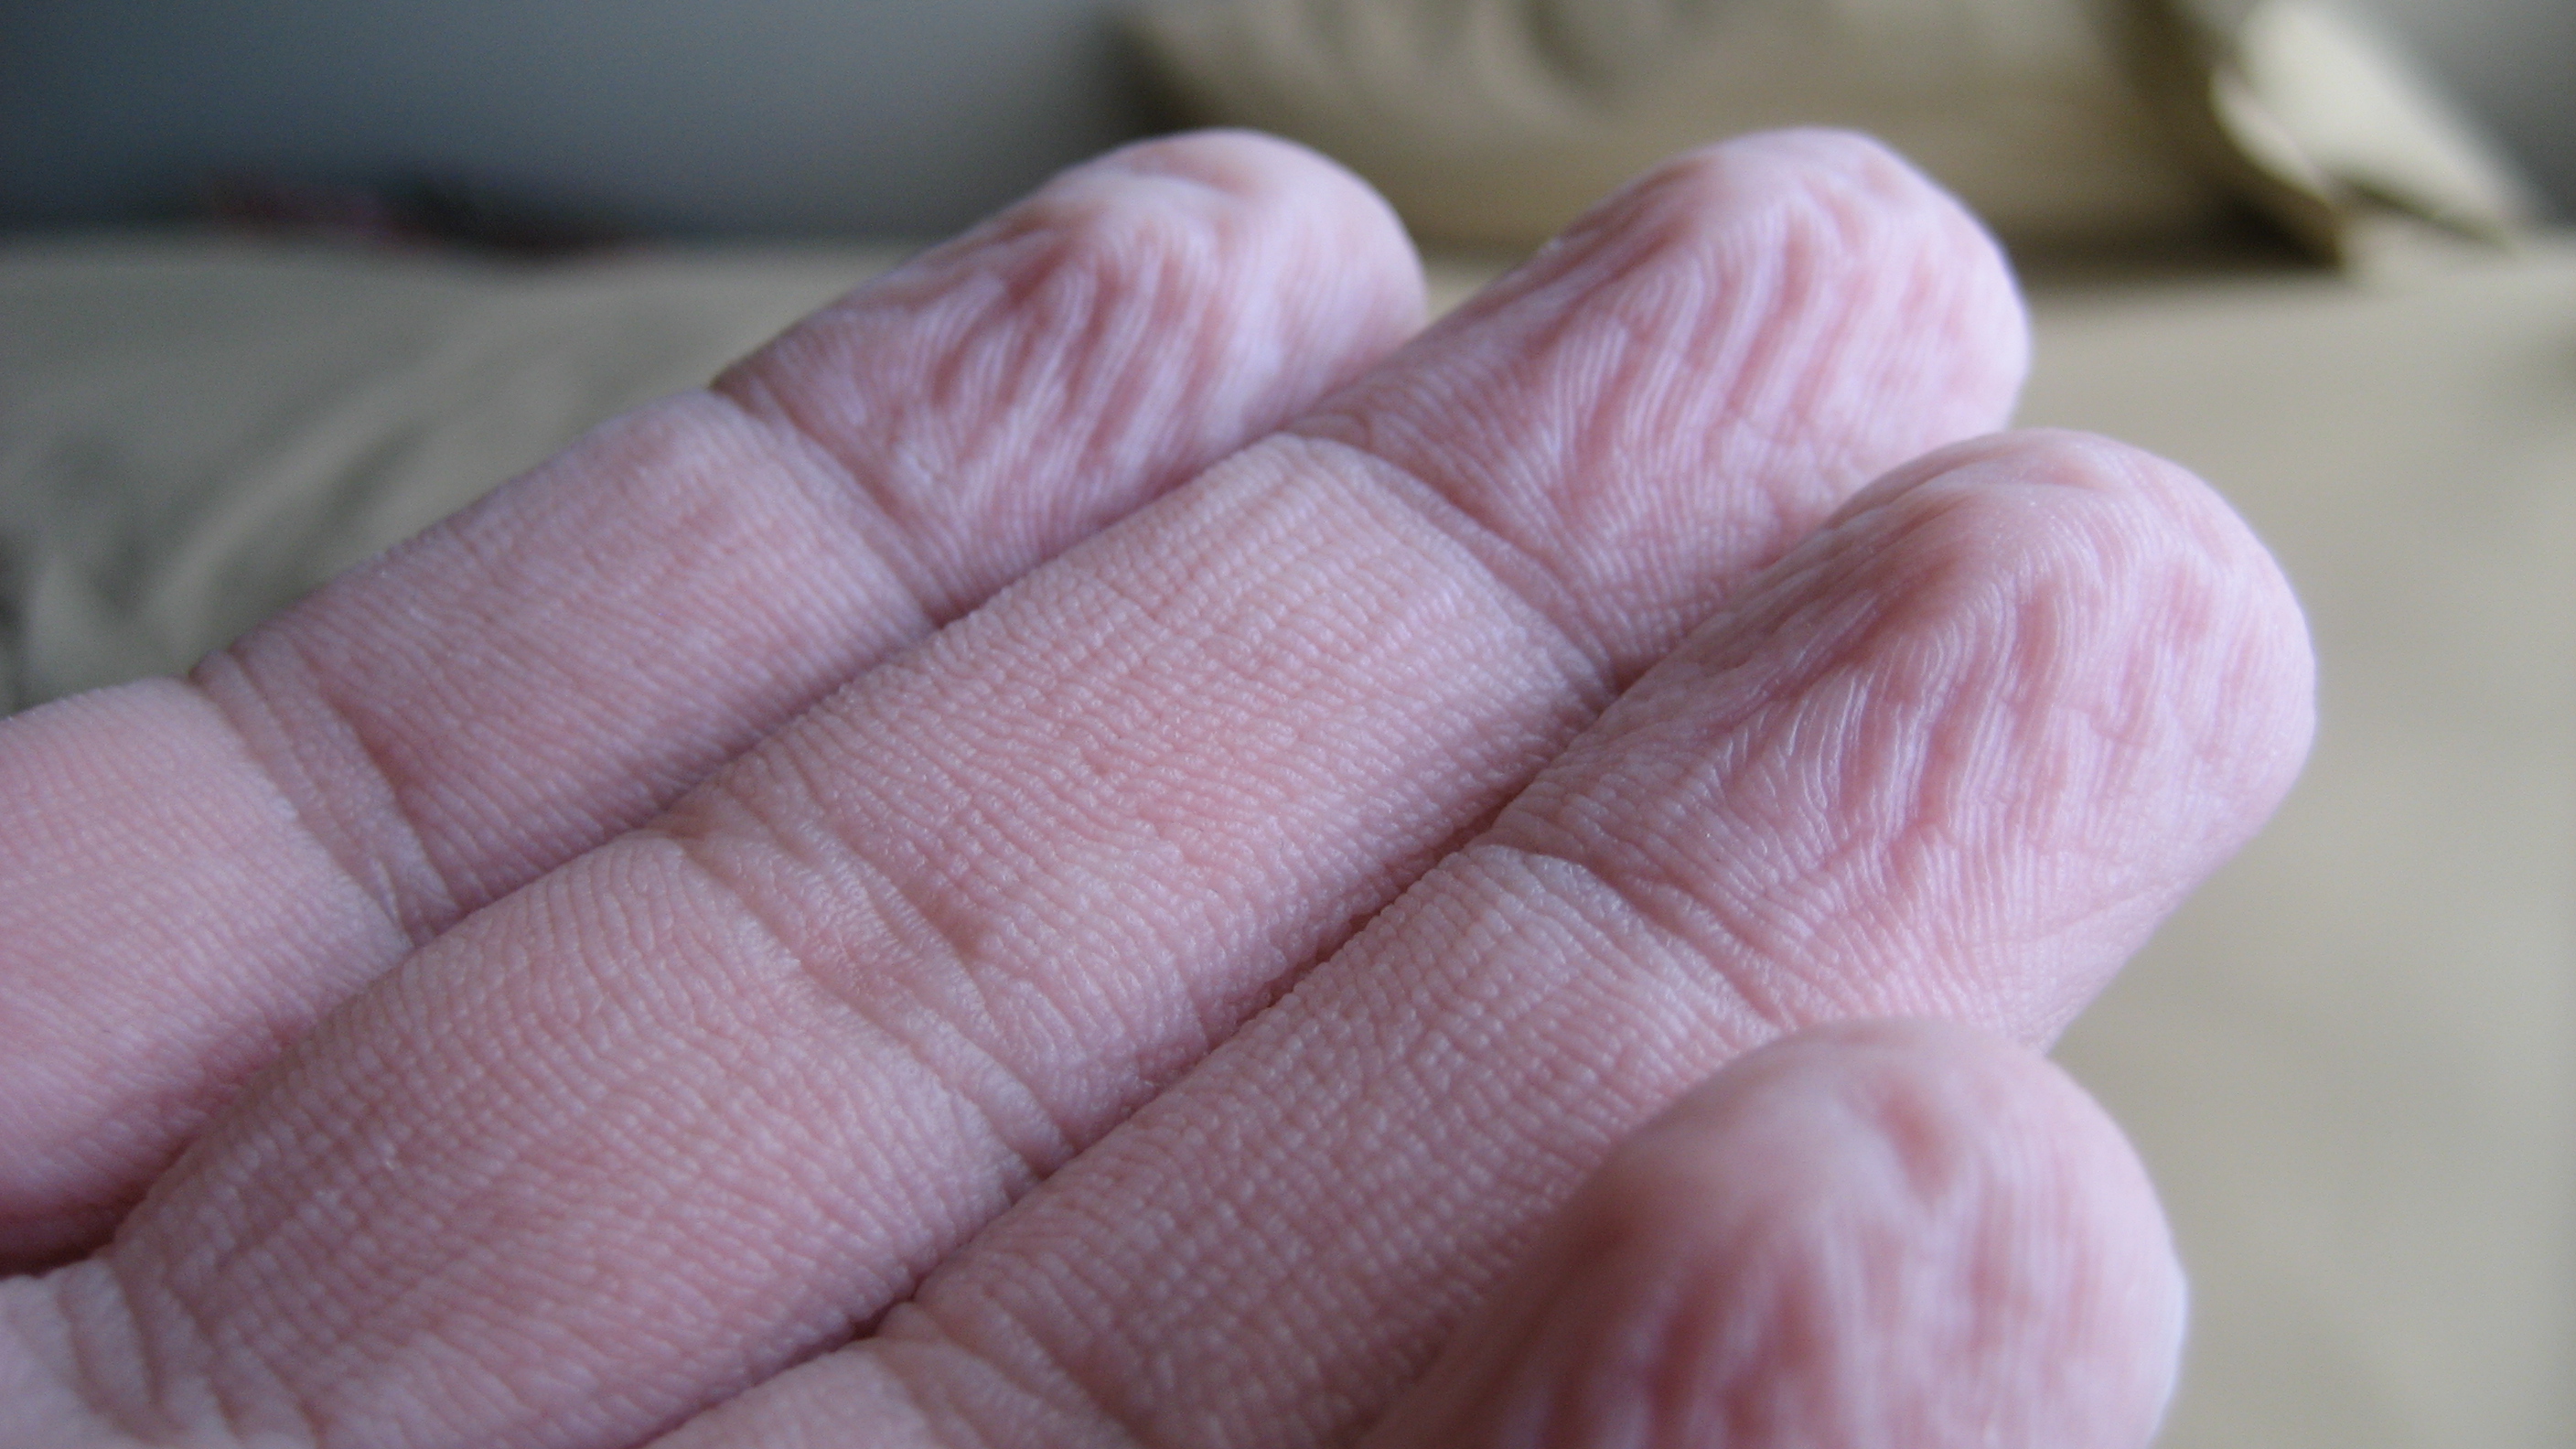 Руки после ванны. Сморщенная кожа на пальцах. Морщинистая кожа от воды.